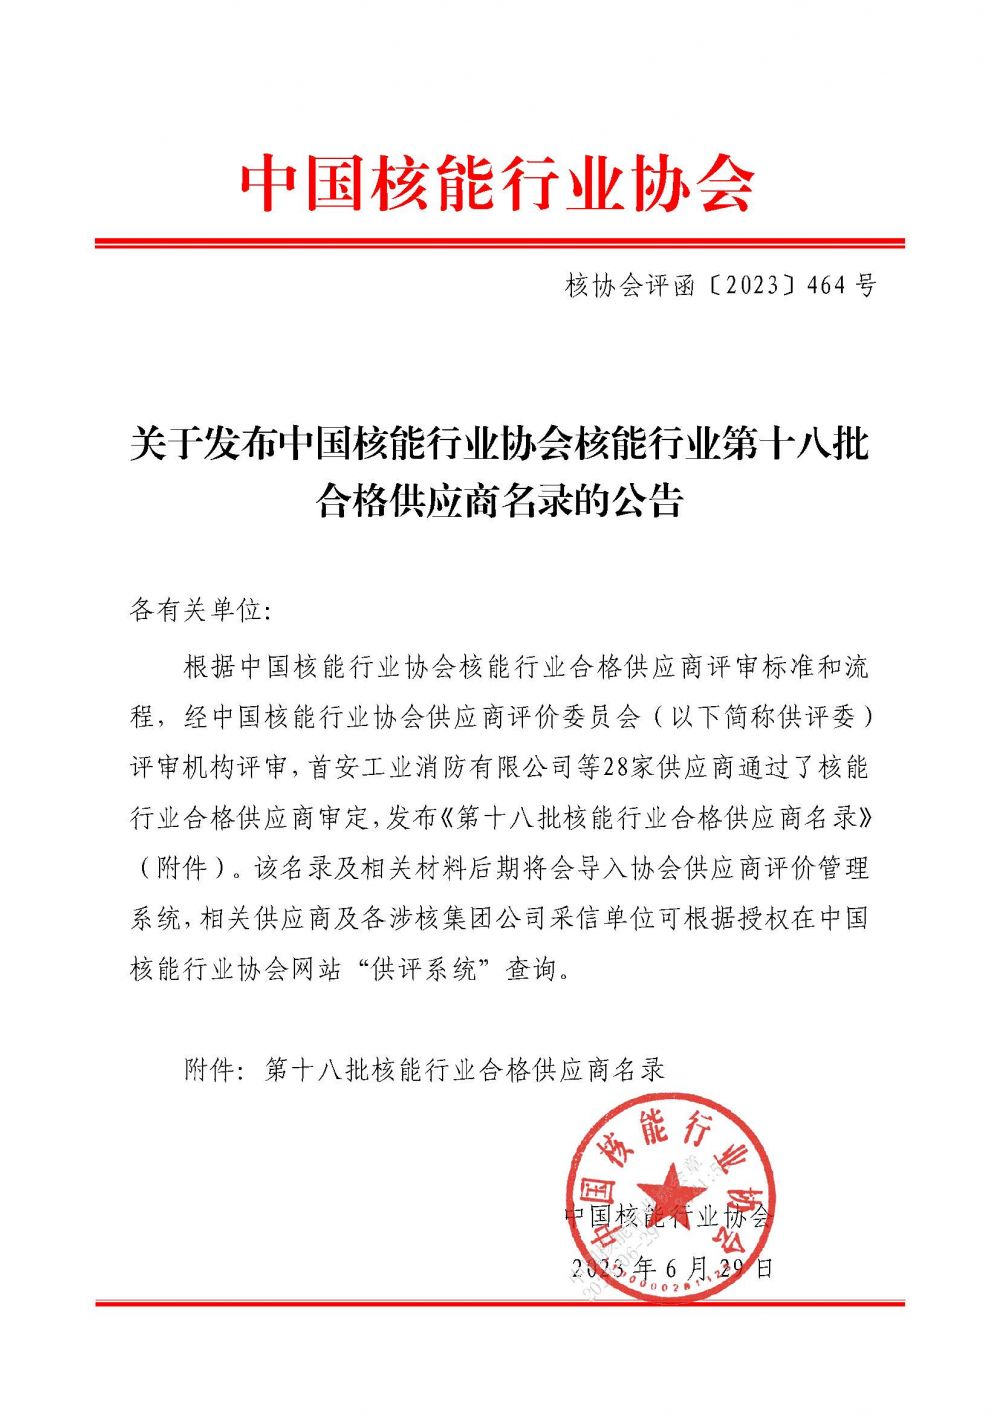 关于发布中国核能行业协会核能行业第十八批合格供应商名录的公告_页面_1.jpg